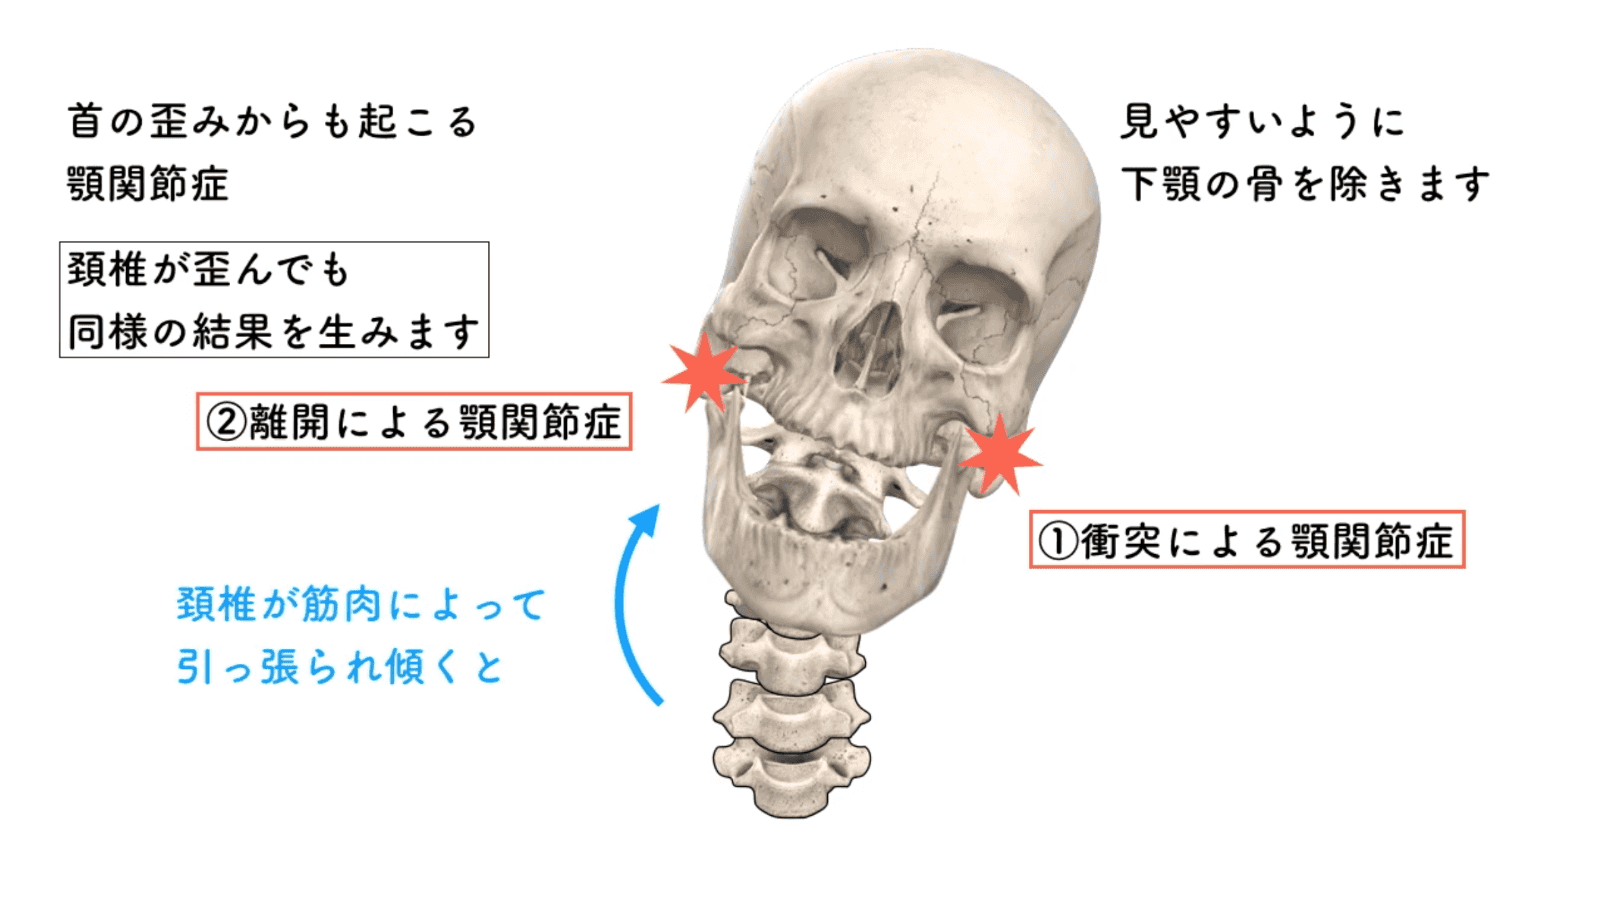 重力と顎関節の関連